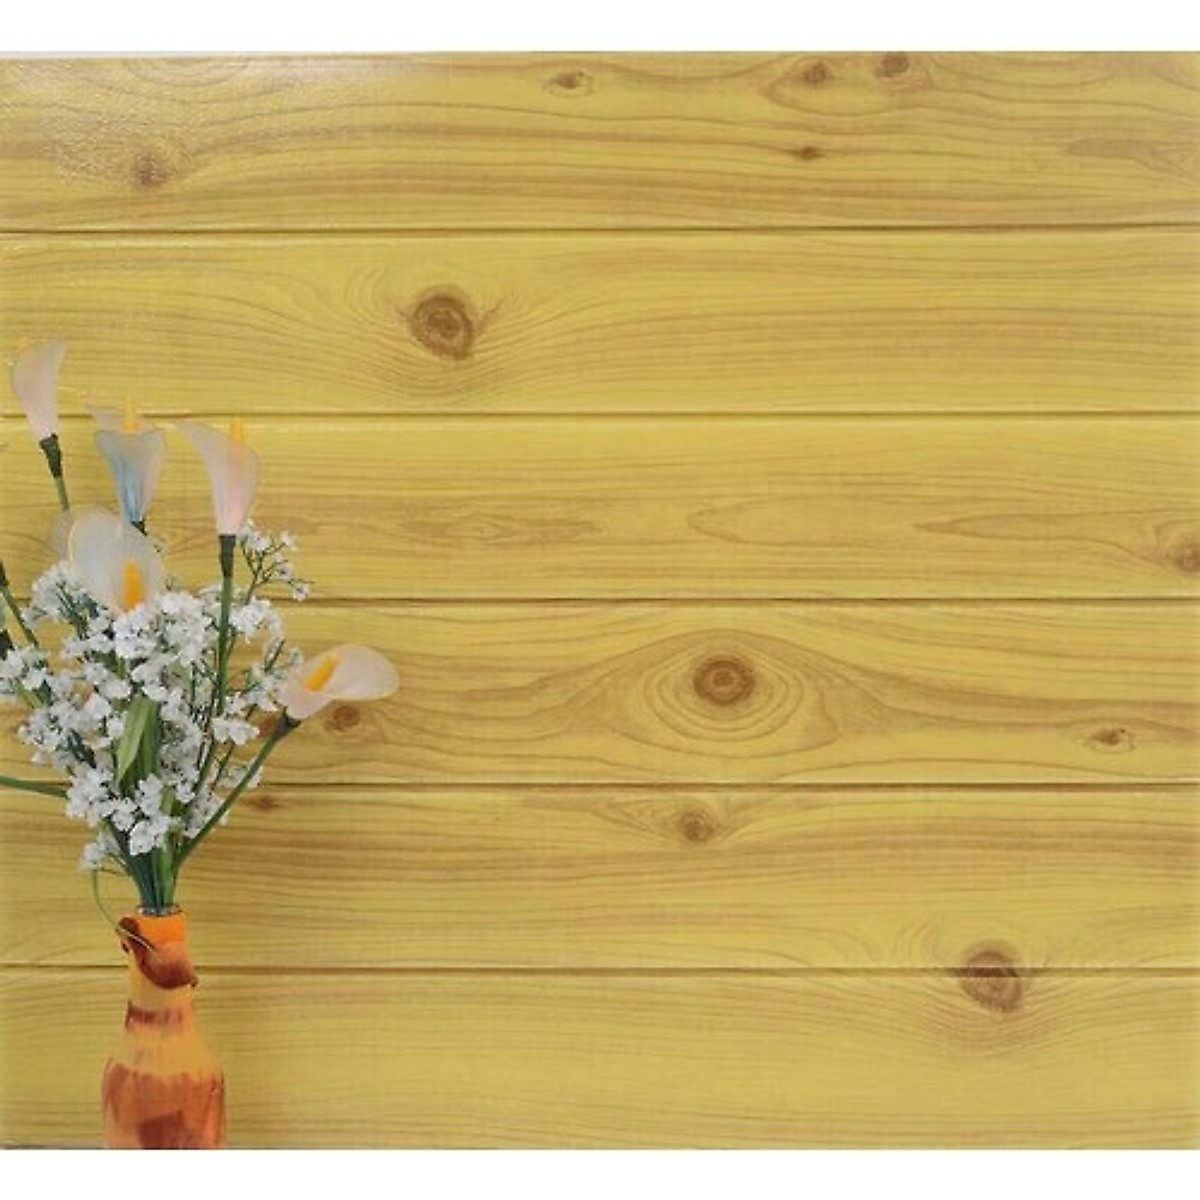 Xốp dán tường giả gỗ 3D là một trong những xu hướng trang trí nội thất được yêu thích nhất hiện nay. Bức ảnh liên quan sẽ giúp bạn không khỏi ngạc nhiên với vẻ đẹp tự nhiên và chân thực của loại xốp này. Bạn chắc chắn sẽ muốn mua ngay sau khi xem ảnh.